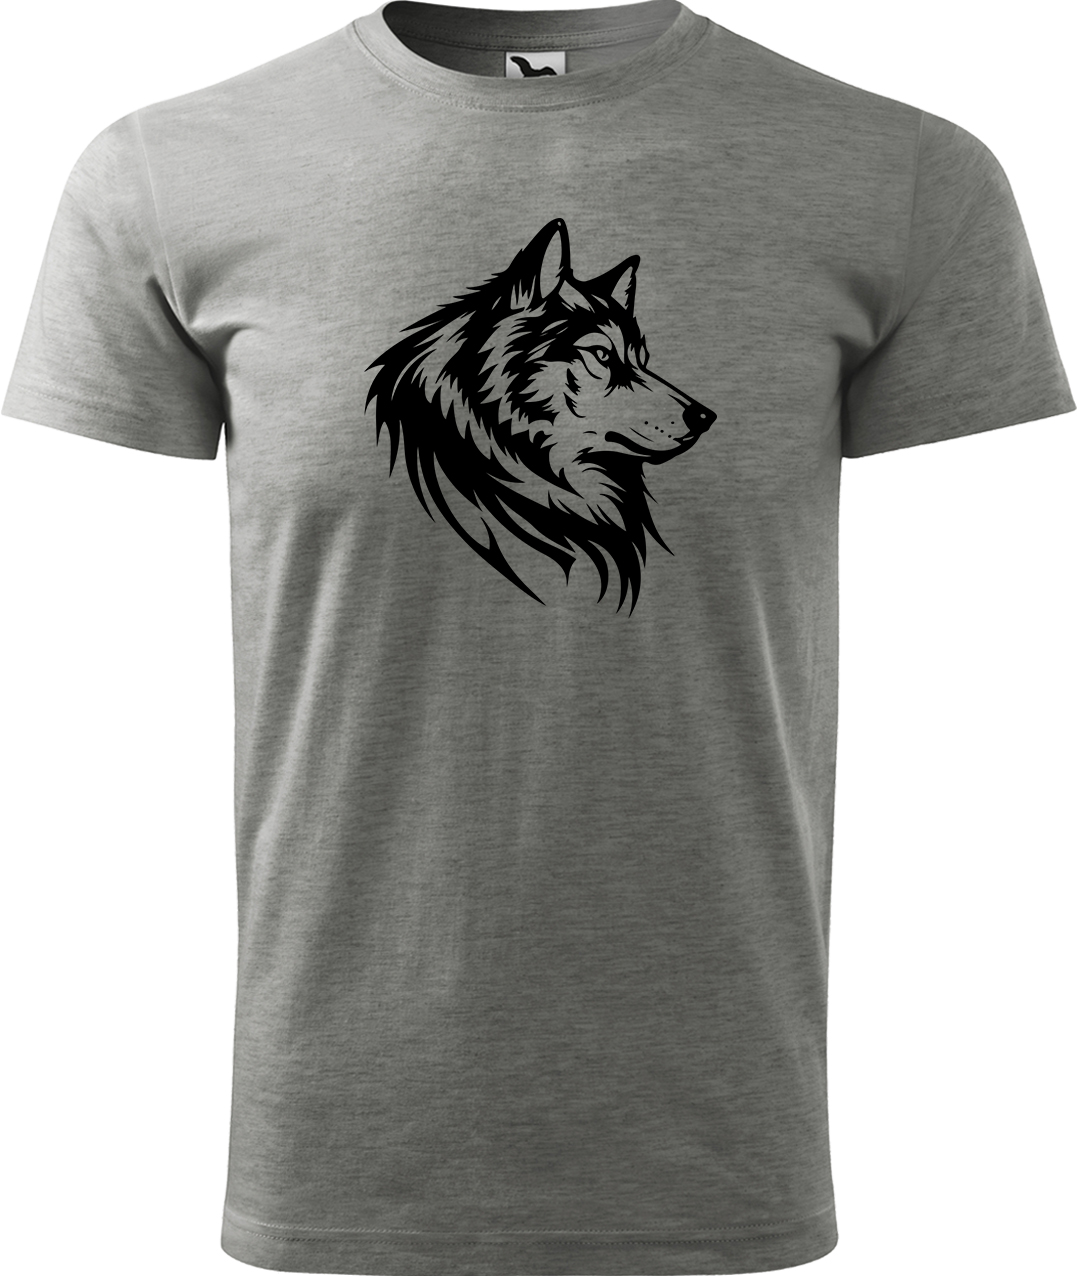 Pánské tričko s vlkem - Wolf Velikost: L, Barva: Tmavě šedý melír (12), Střih: pánský